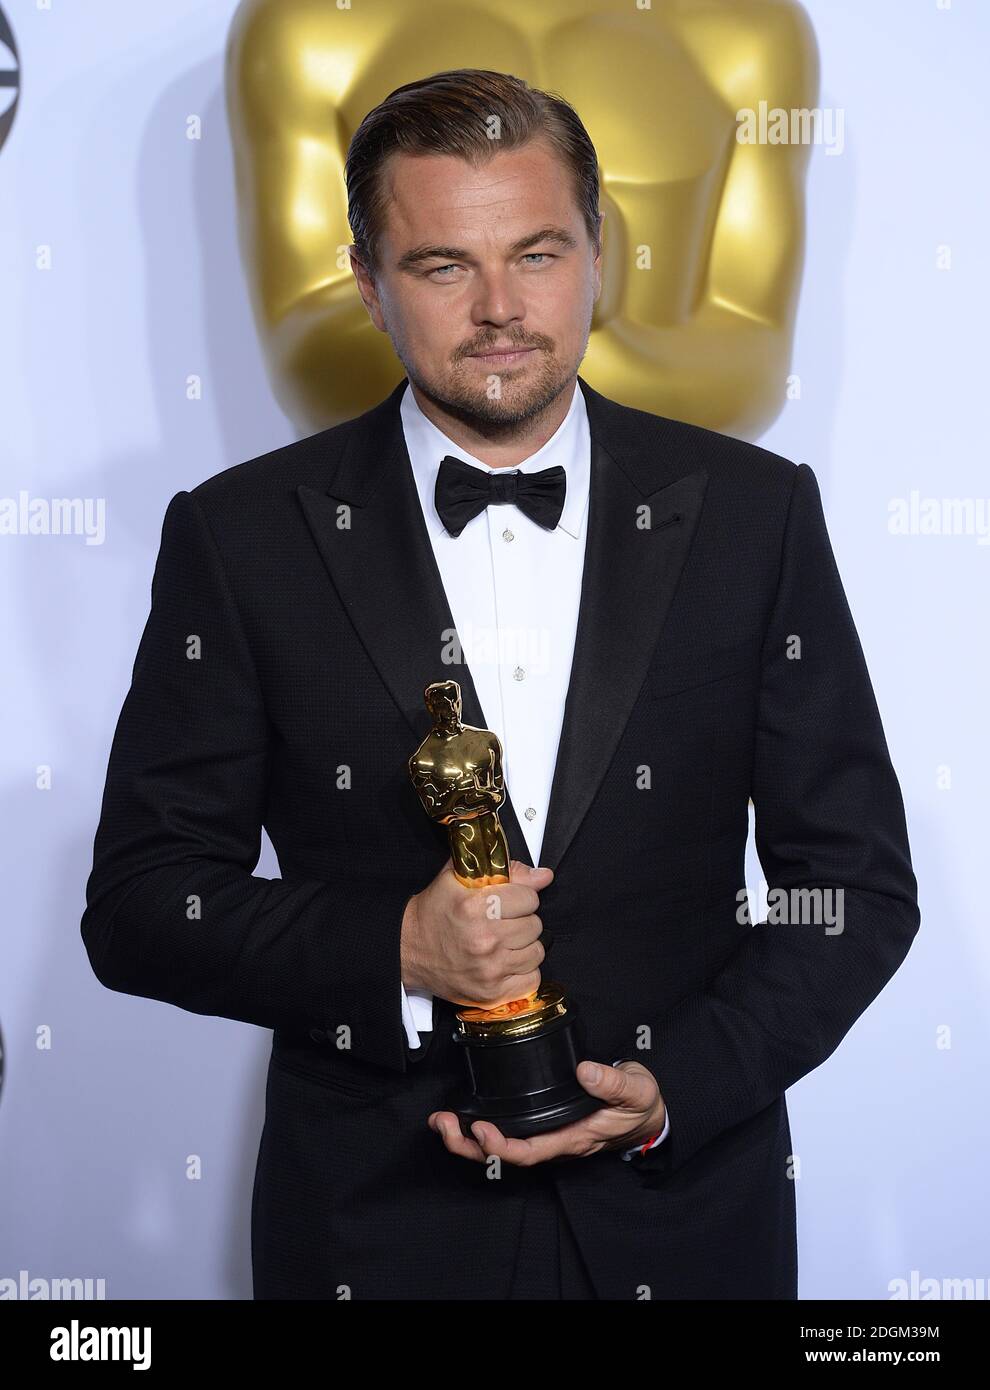 Leonardo DiCaprio avec l'Oscar du meilleur acteur pour 'le revenant' dans la salle de presse des 88e Academy Awards qui se tiennent au Dolby Theatre à Hollywood, Los Angeles, CA, Etats-Unis, le 28 février 2016. Banque D'Images